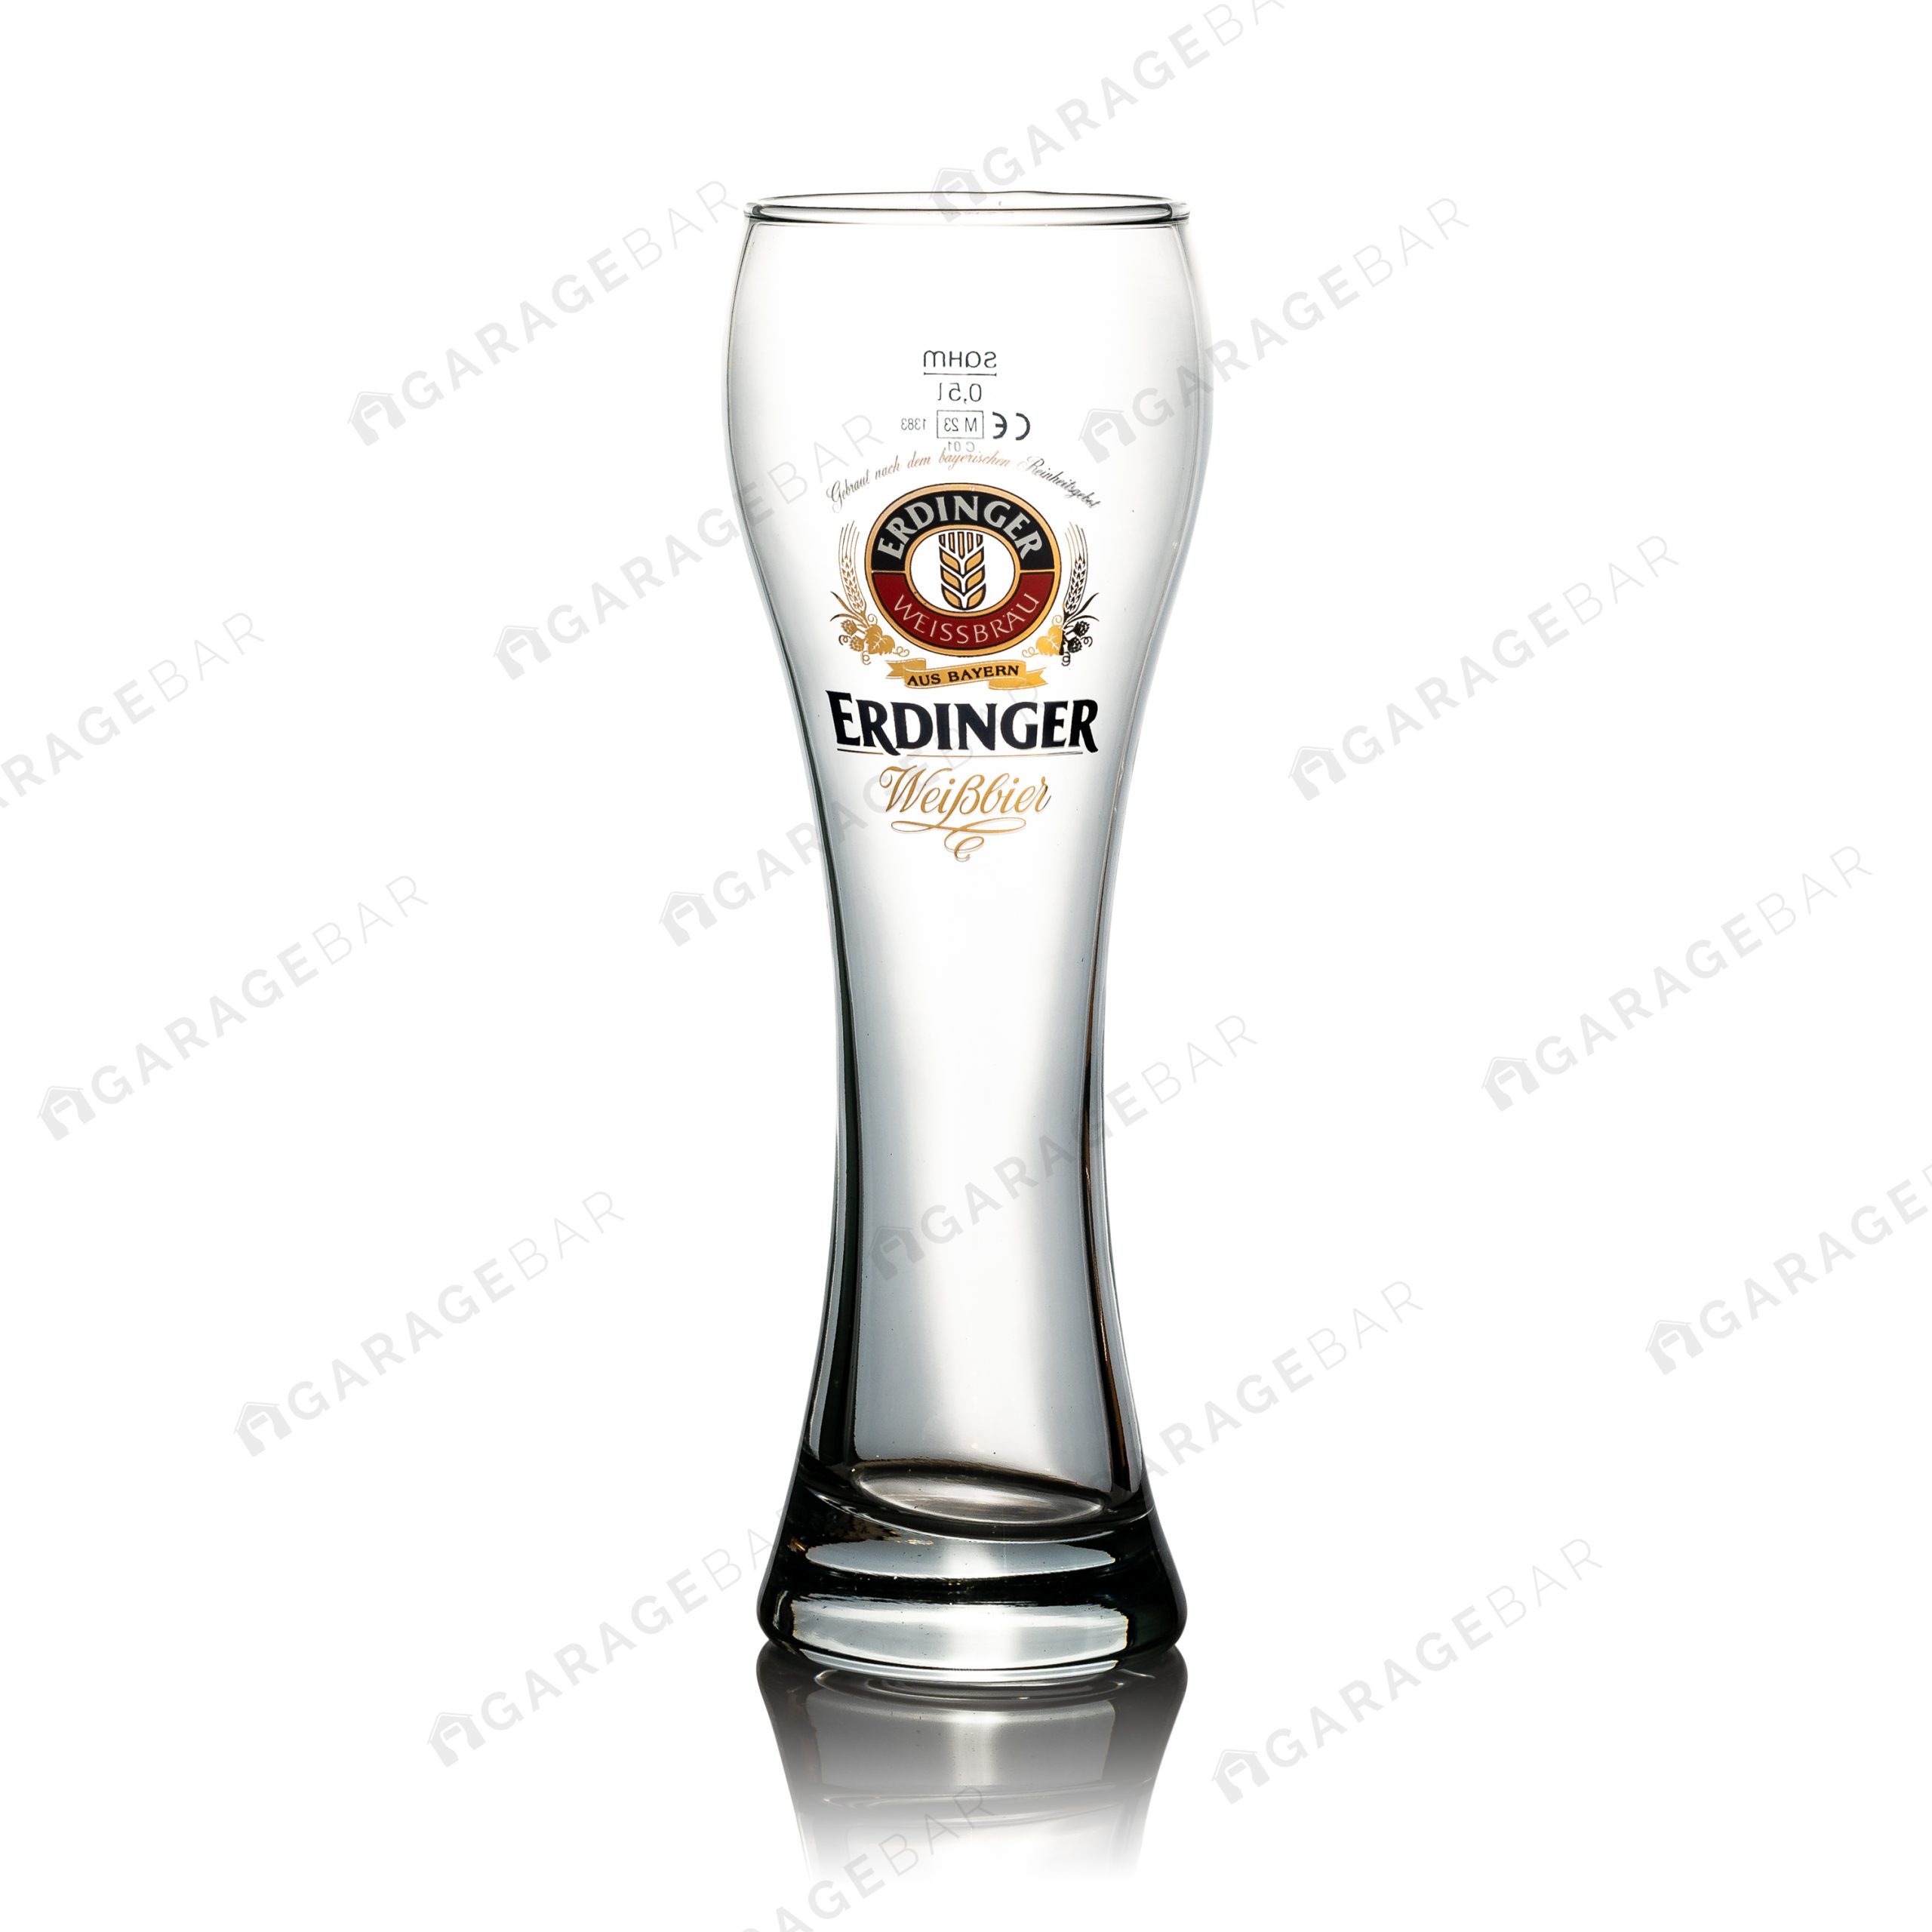 Erdinger Pint Beer Glass